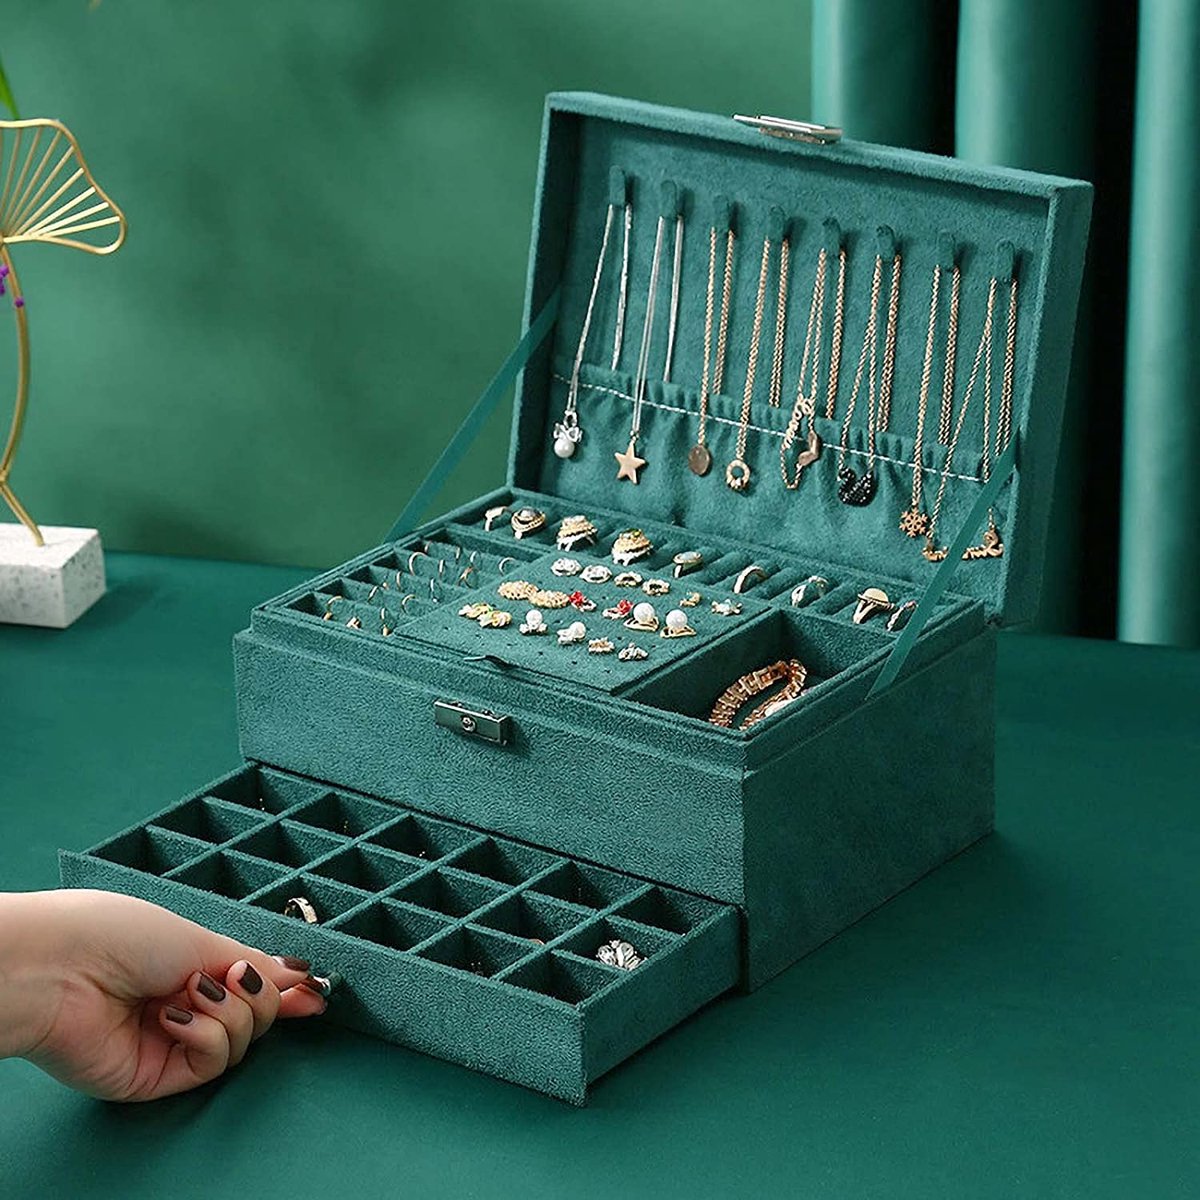 Sieradenkistje, juwelendoos van fluweel met 2 niveaus, sieradendoos sieradenkoffer voor dames, sieradendoos voor ringen, oorbellen, halskettingen en horloges, met slot en sleutels, donkergroen